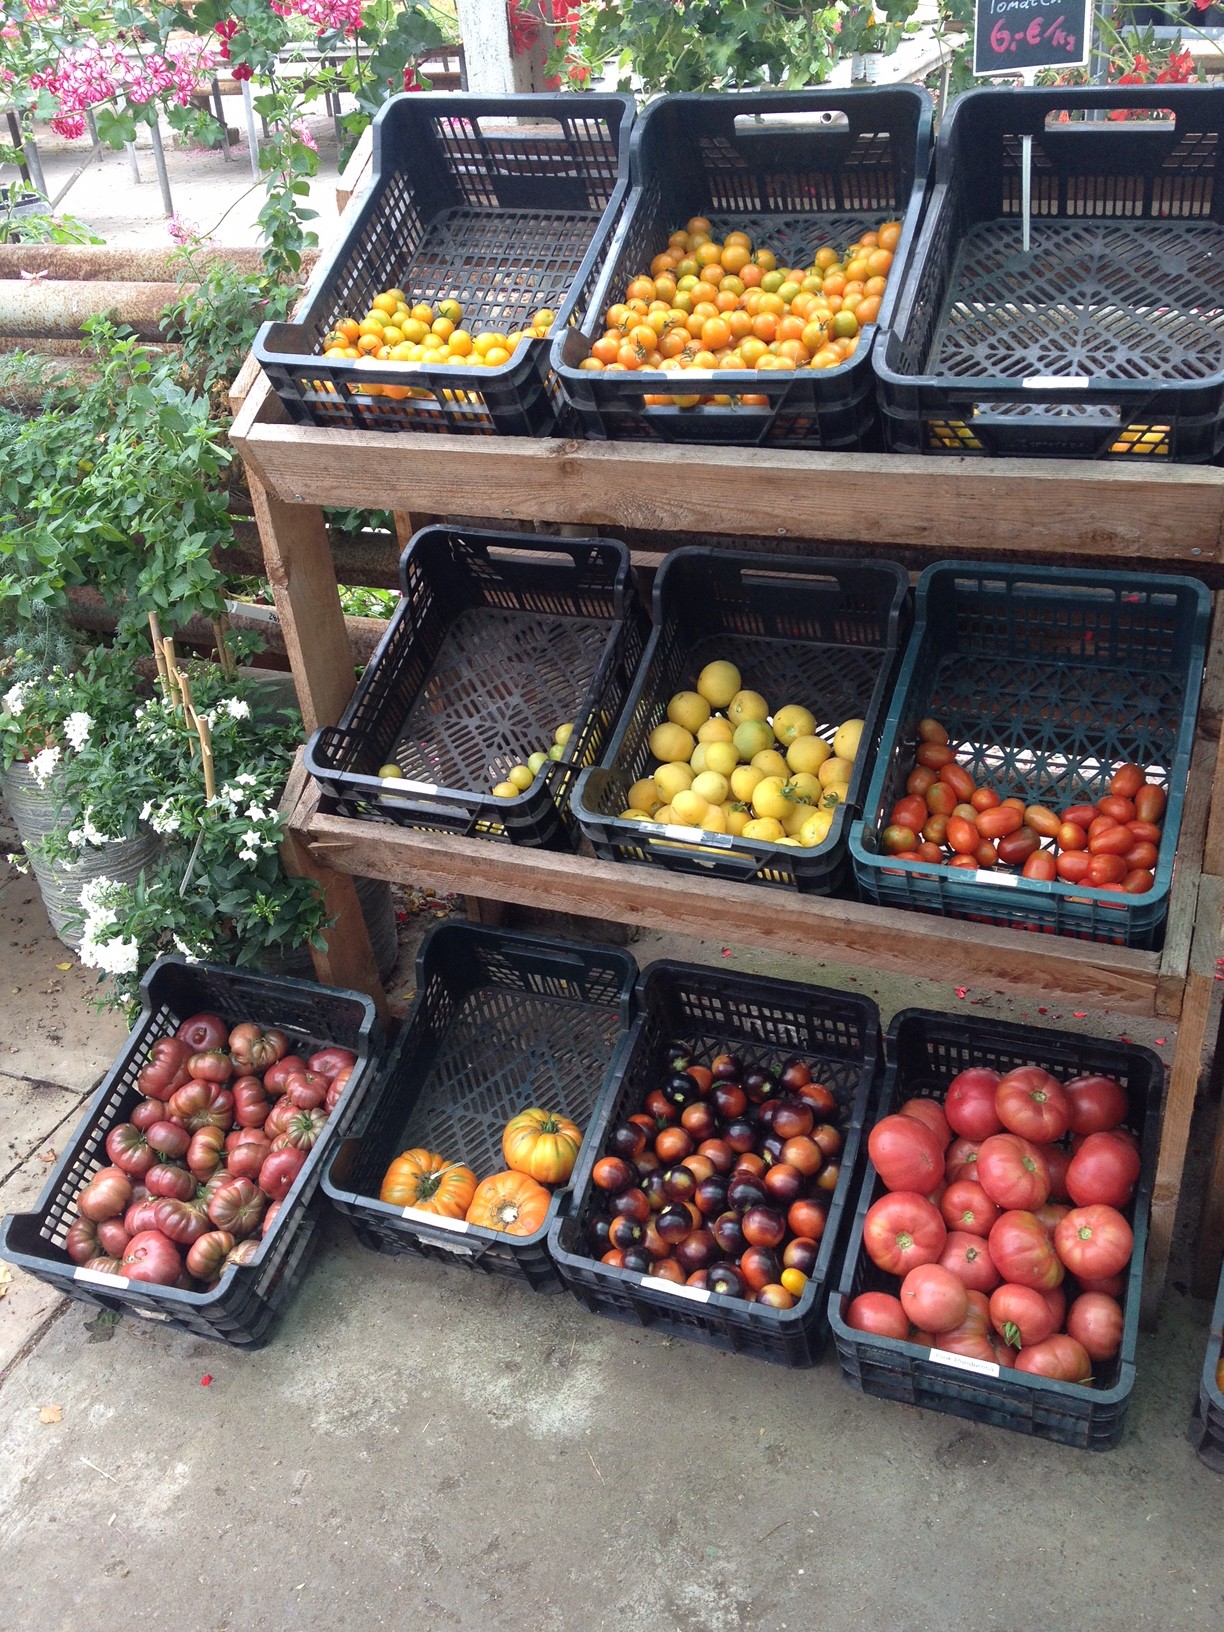 Tomatenvielfalt – ich kann mich nicht entscheiden